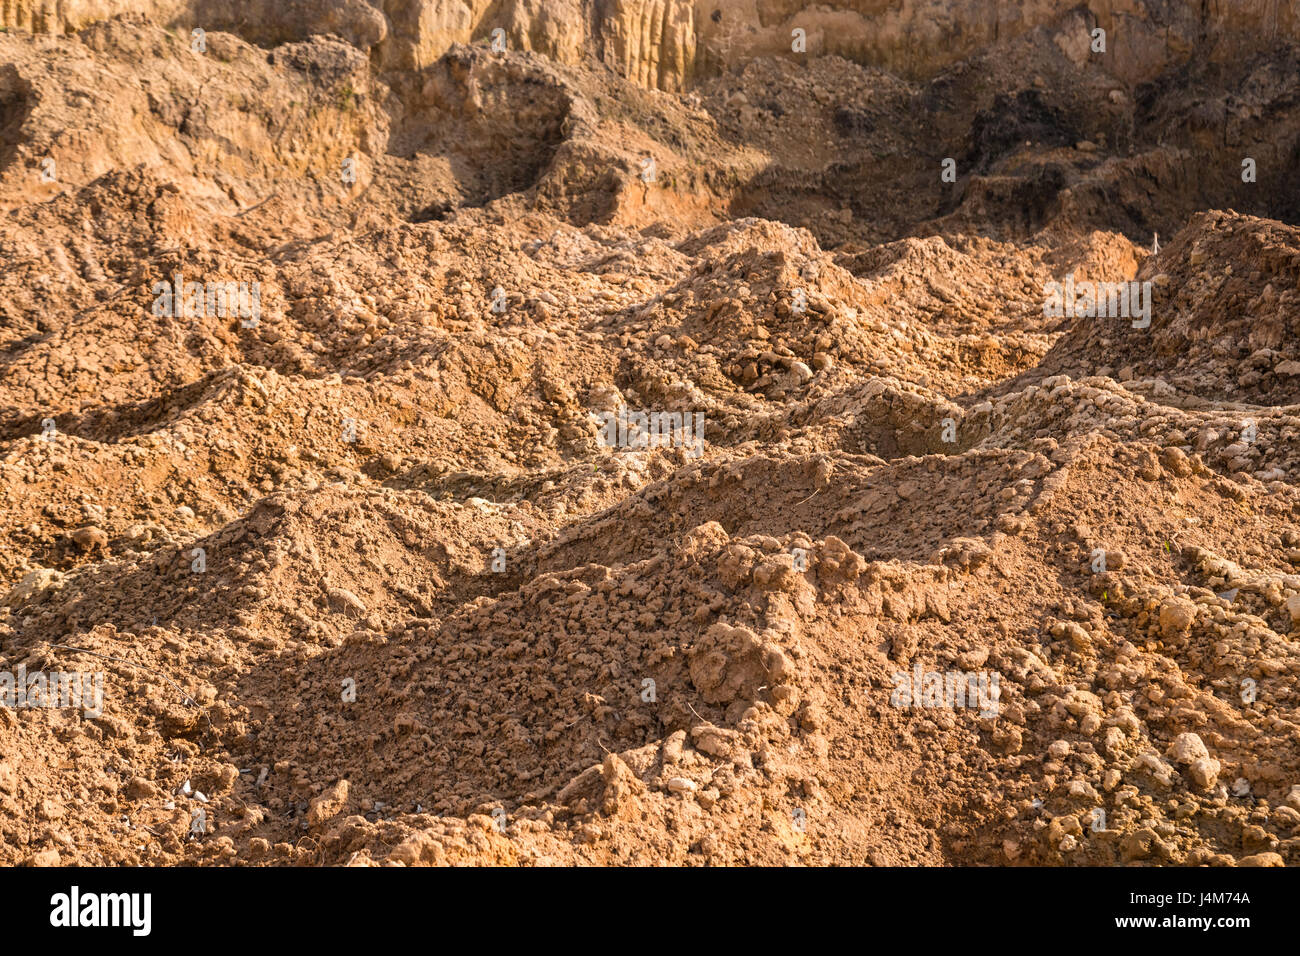 Di argilla e sabbia nella cava. Bellissimo sfondo insolito simile alla superficie del pianeta Marte o la luna Foto Stock